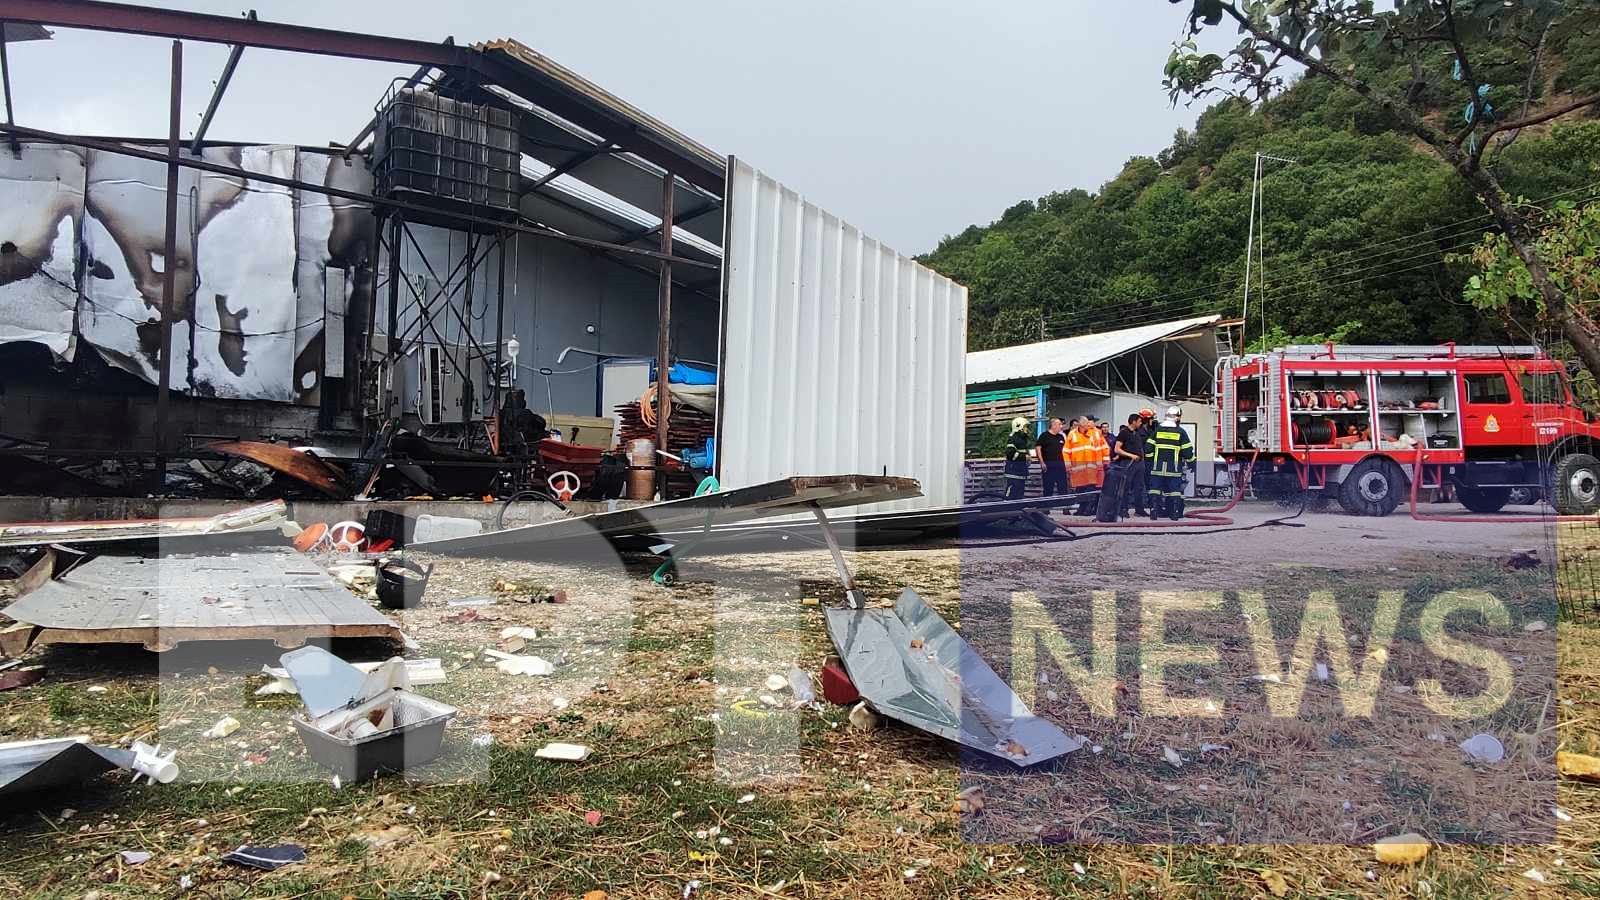 Ιωάννινα: Στην Μονάδα Εγκαυμάτων του Νοσοκομείου Παπανικολάου μεταφέρεται ο 40χρονος που τραυματίστηκε από έκρηξη σε πτηνοτροφείο